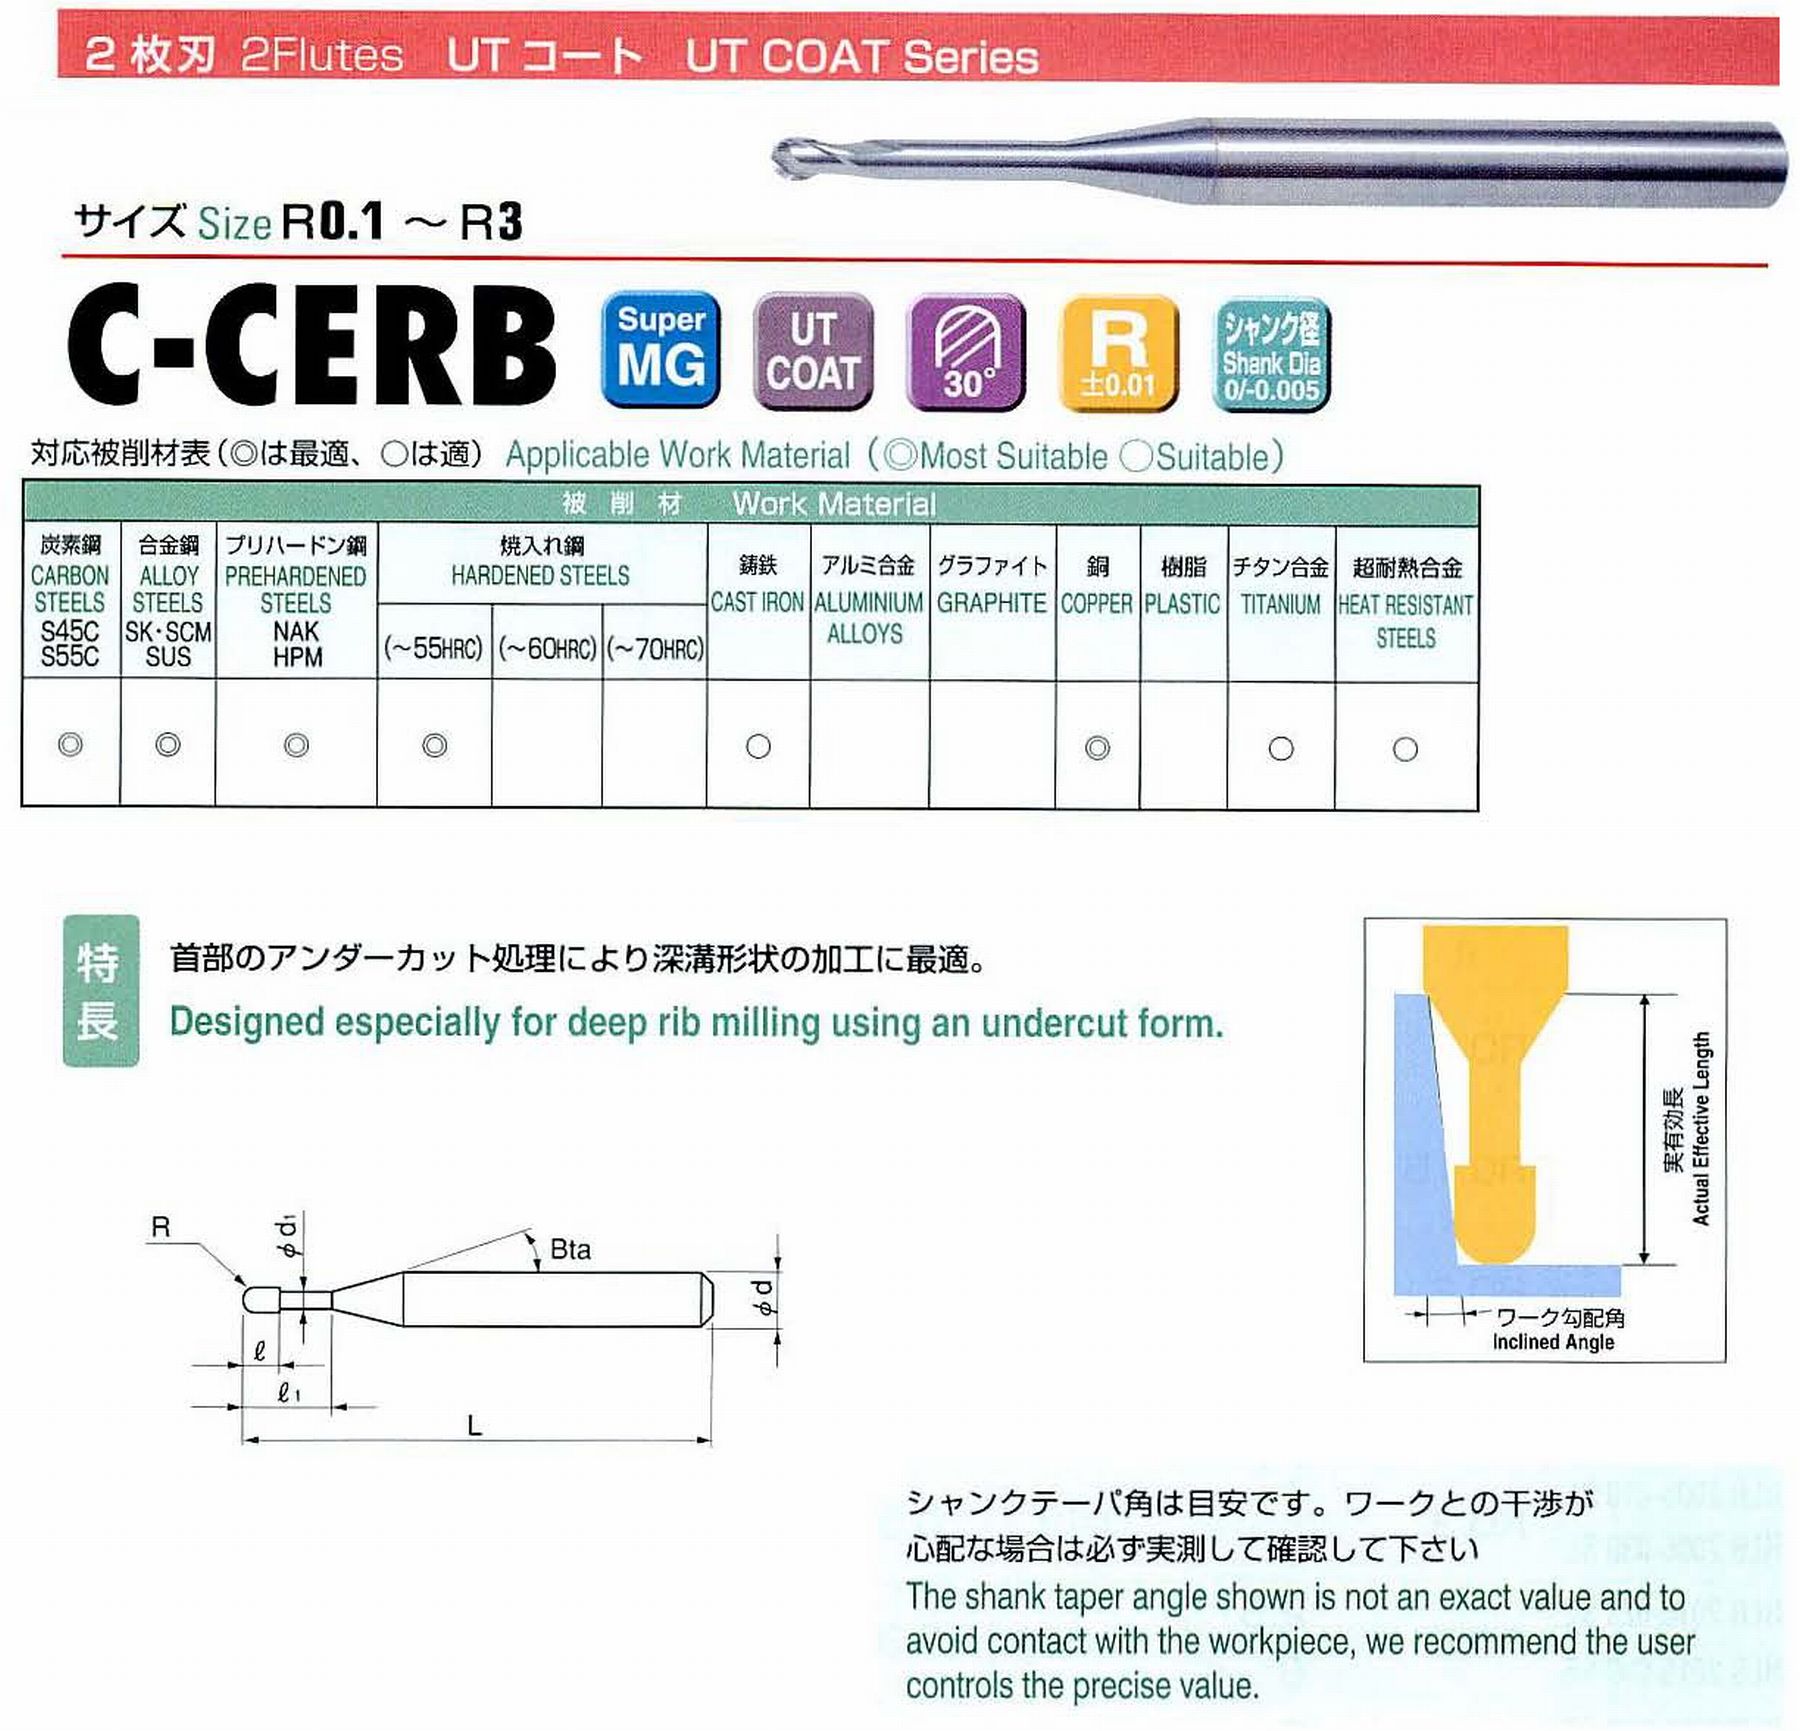 ユニオンツール 2枚刃 C-CERB2030-10 ボール半径R1.5 有効長10 刃長2.4 首径2.91 シャンクテーパ角11° 全長60 シャンク径6